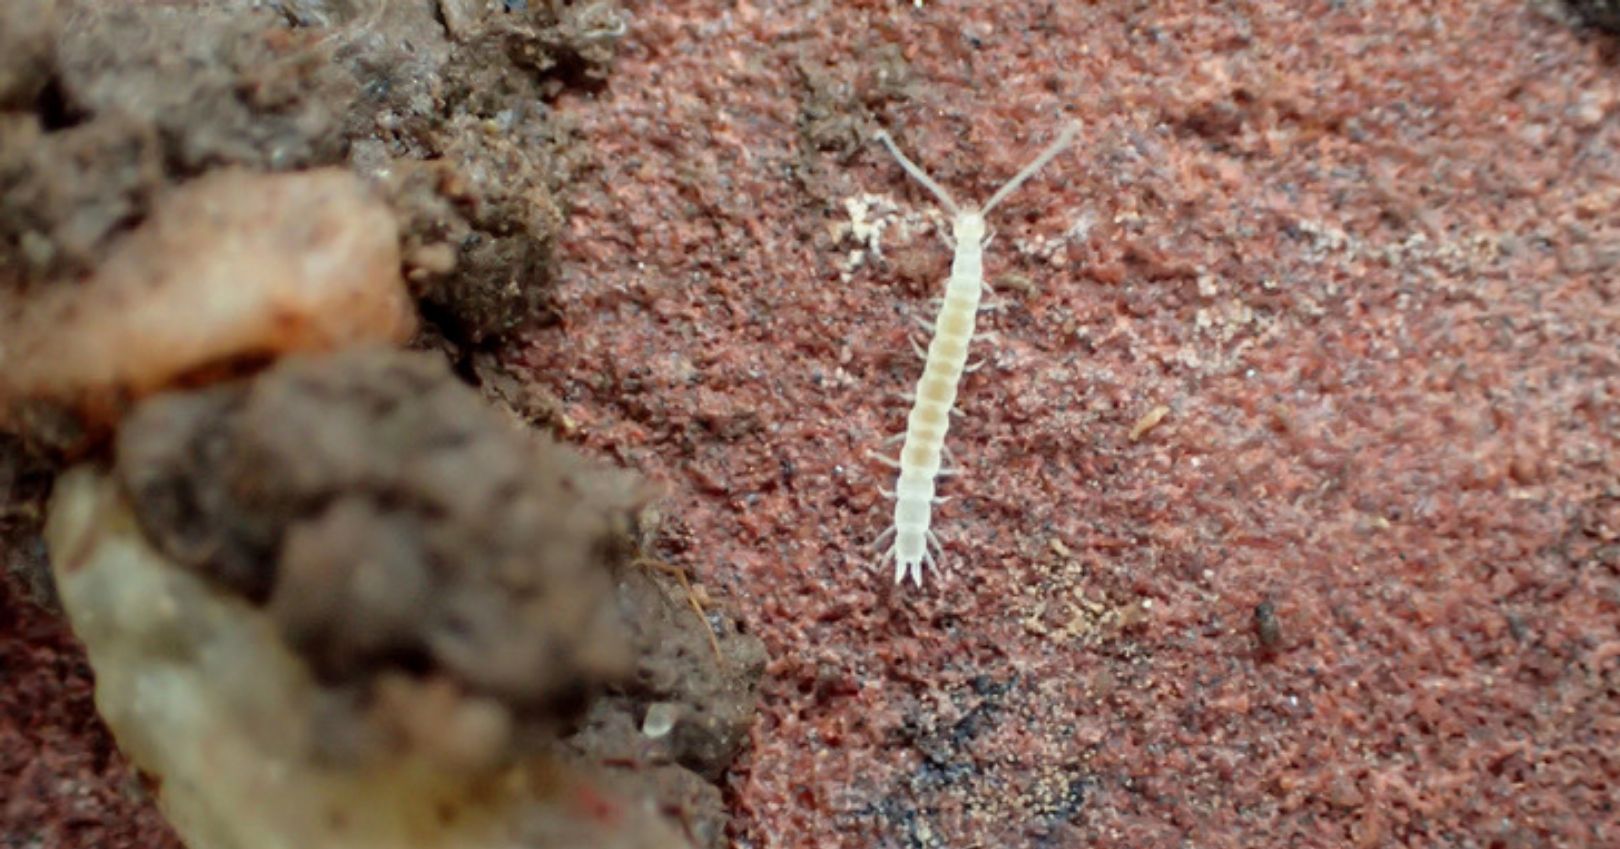 Symphylans (Garden Centipede)